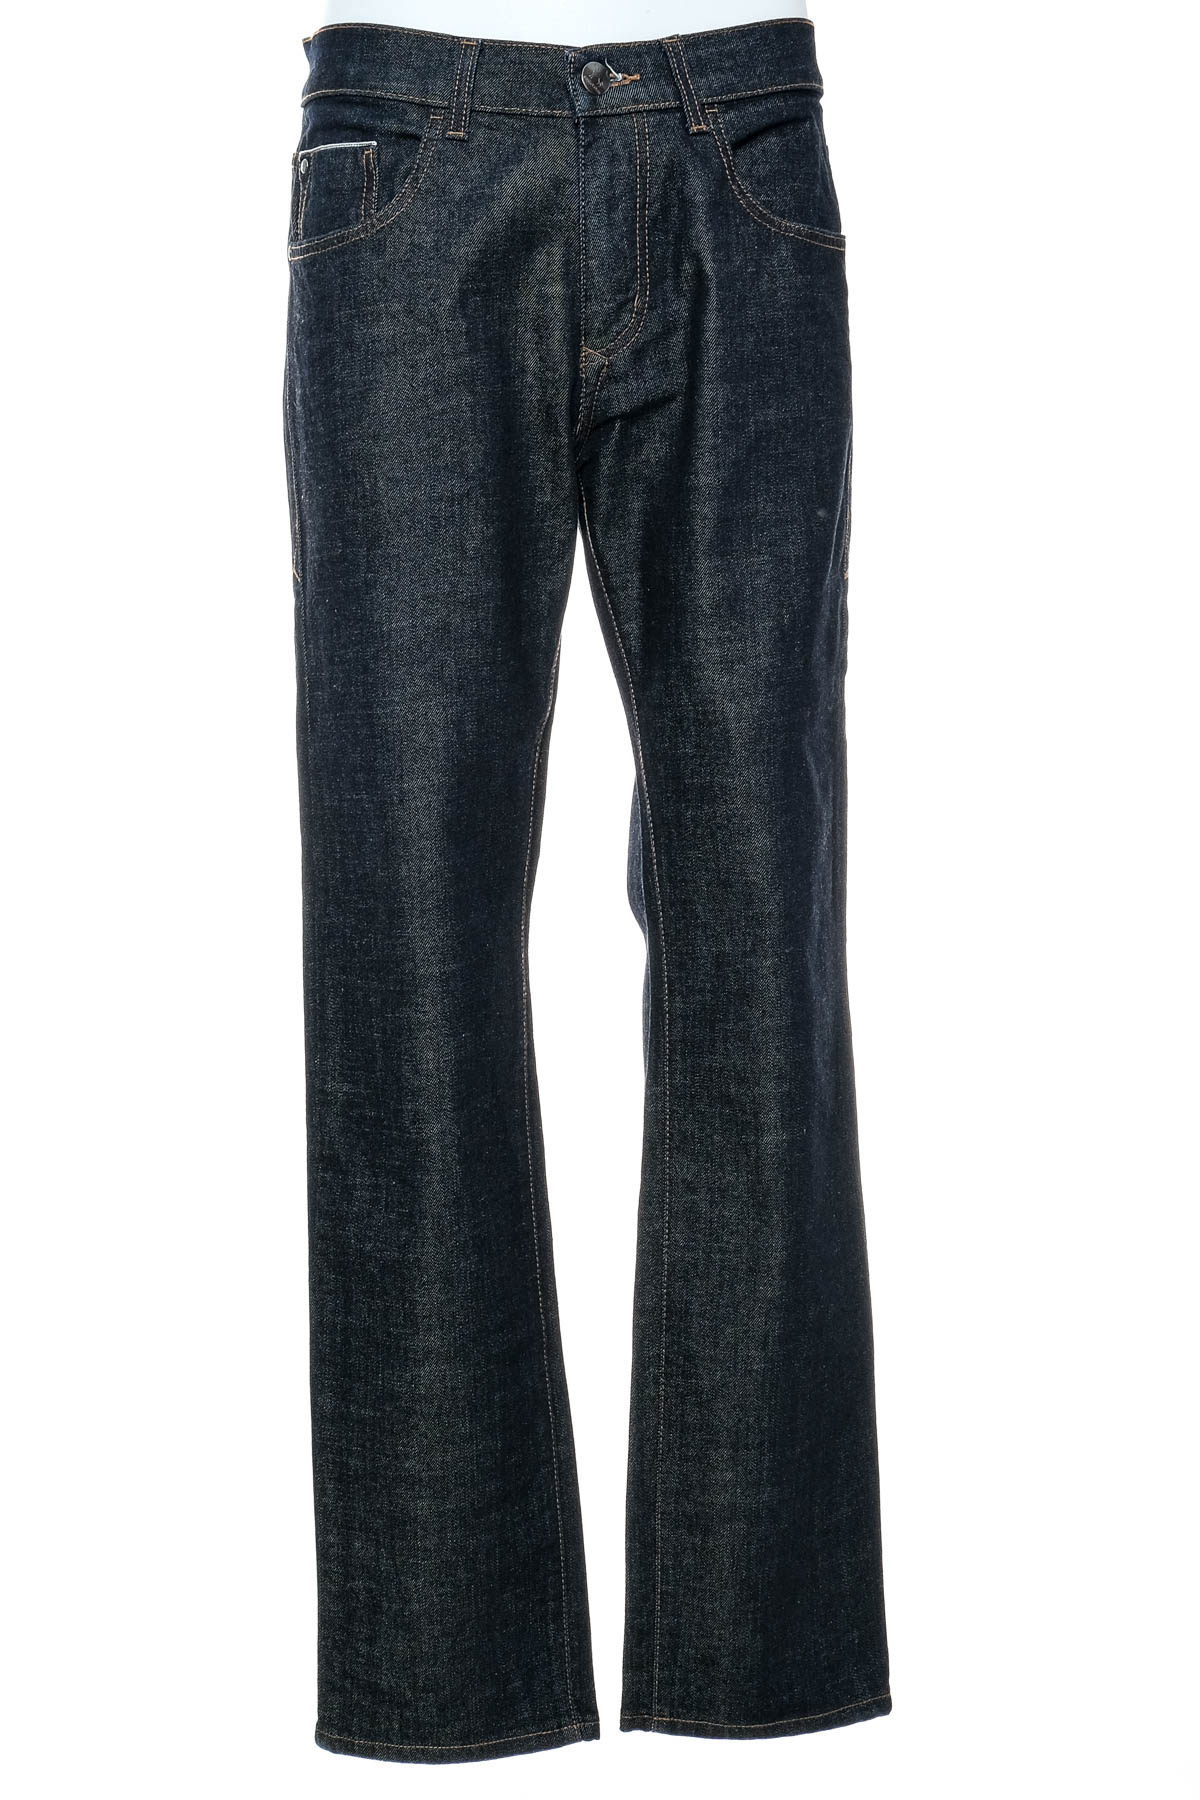 Men's jeans - Emilio Adani - 0